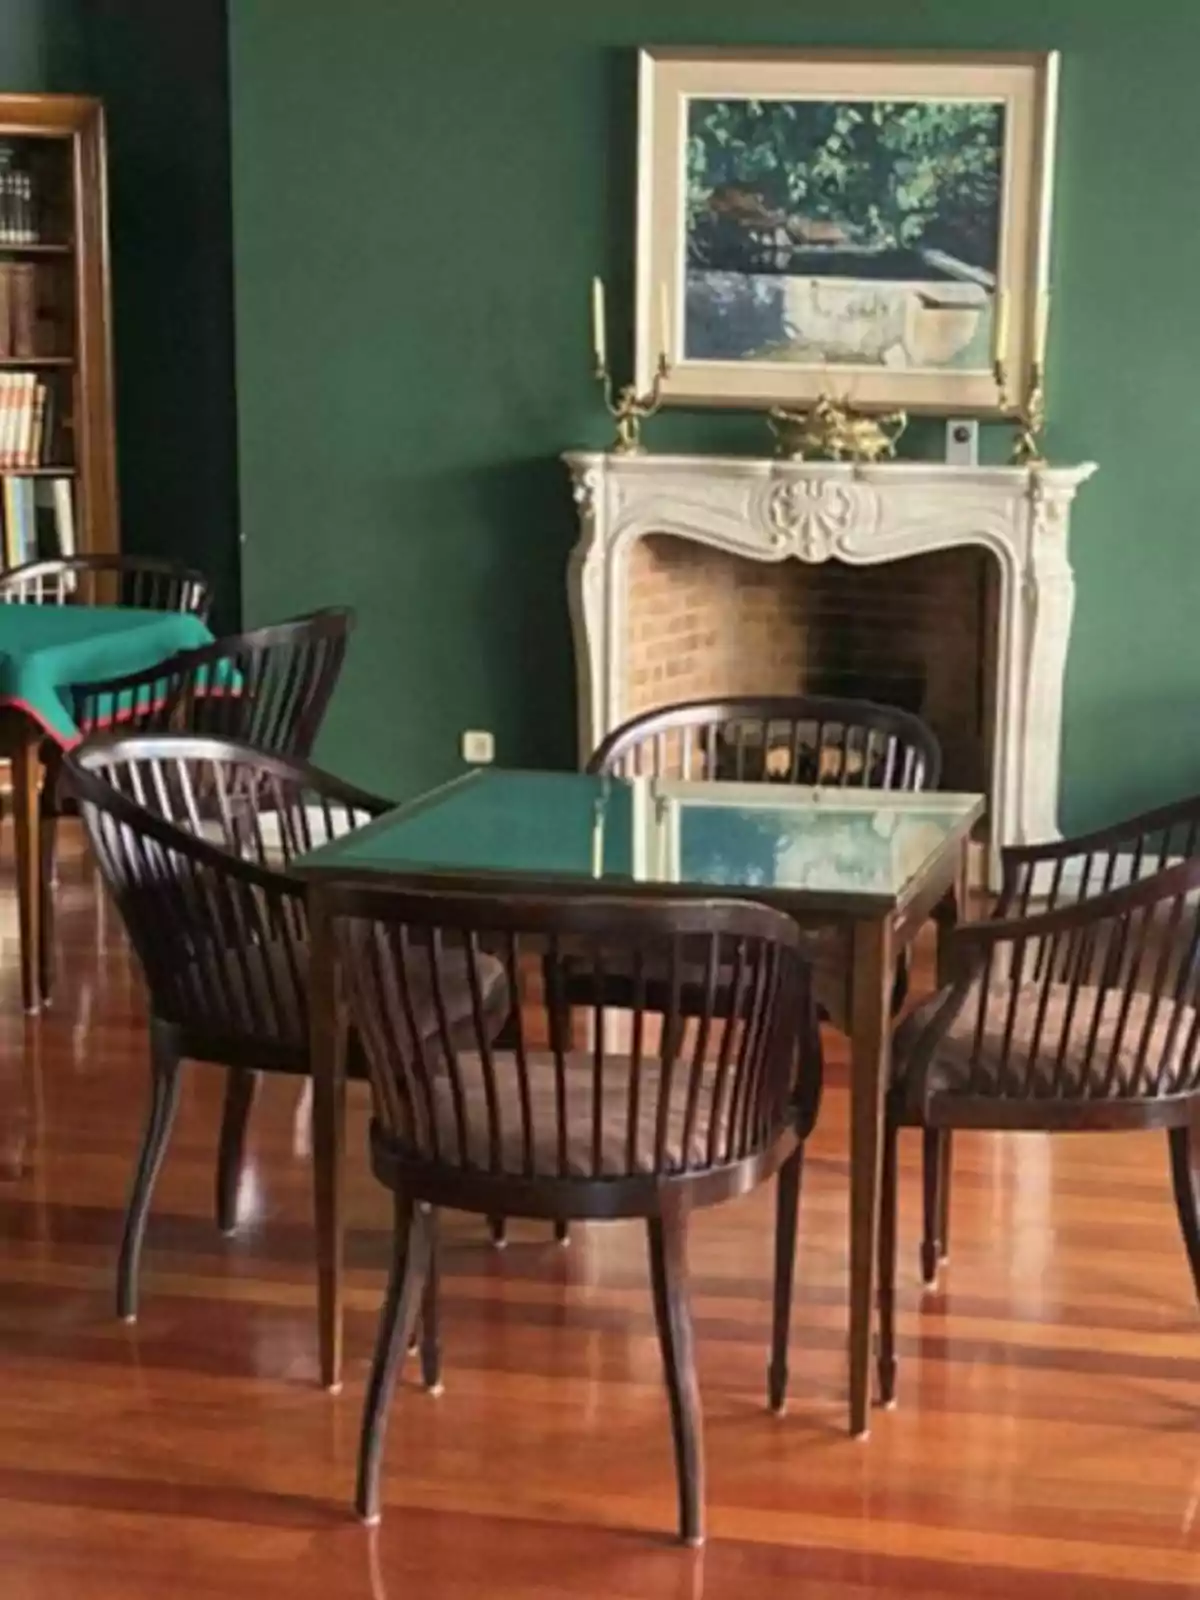 Sala con chimenea, mesa de cristal, sillas de madera y paredes verdes.